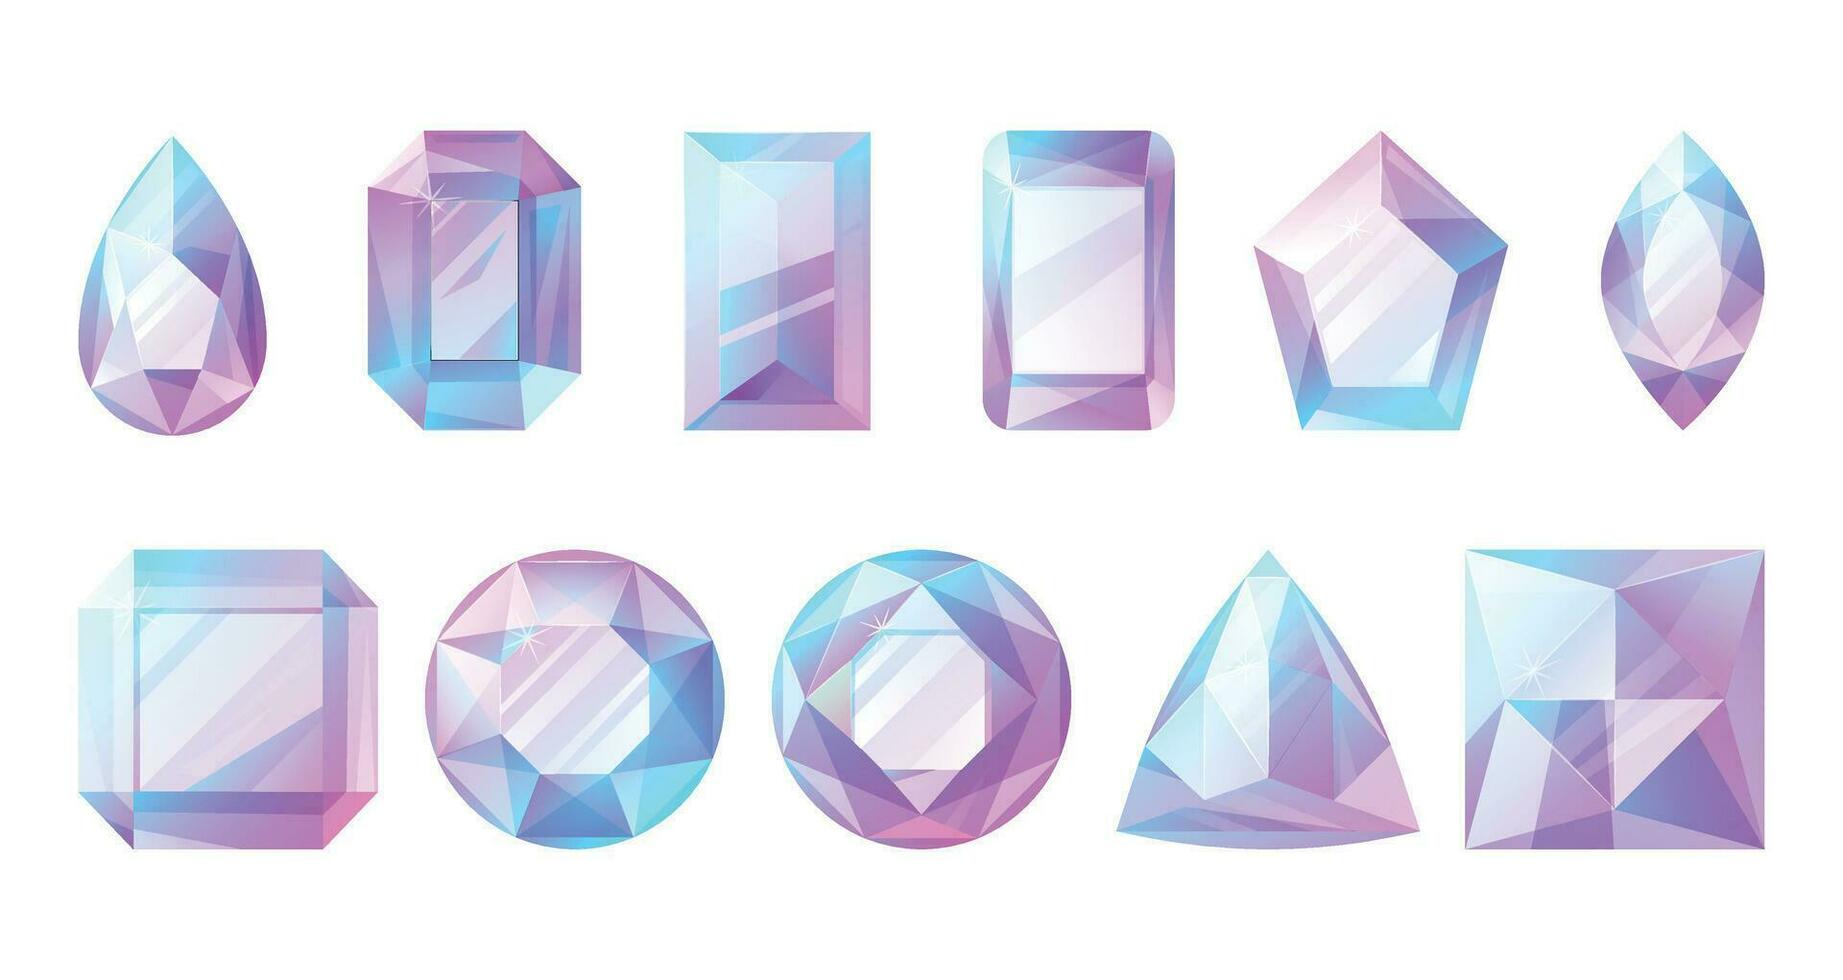 sfaccettato blu e rosa splendente pietre preziose di vario forme. impostato di vettore cartone animato diamanti, gioielleria.